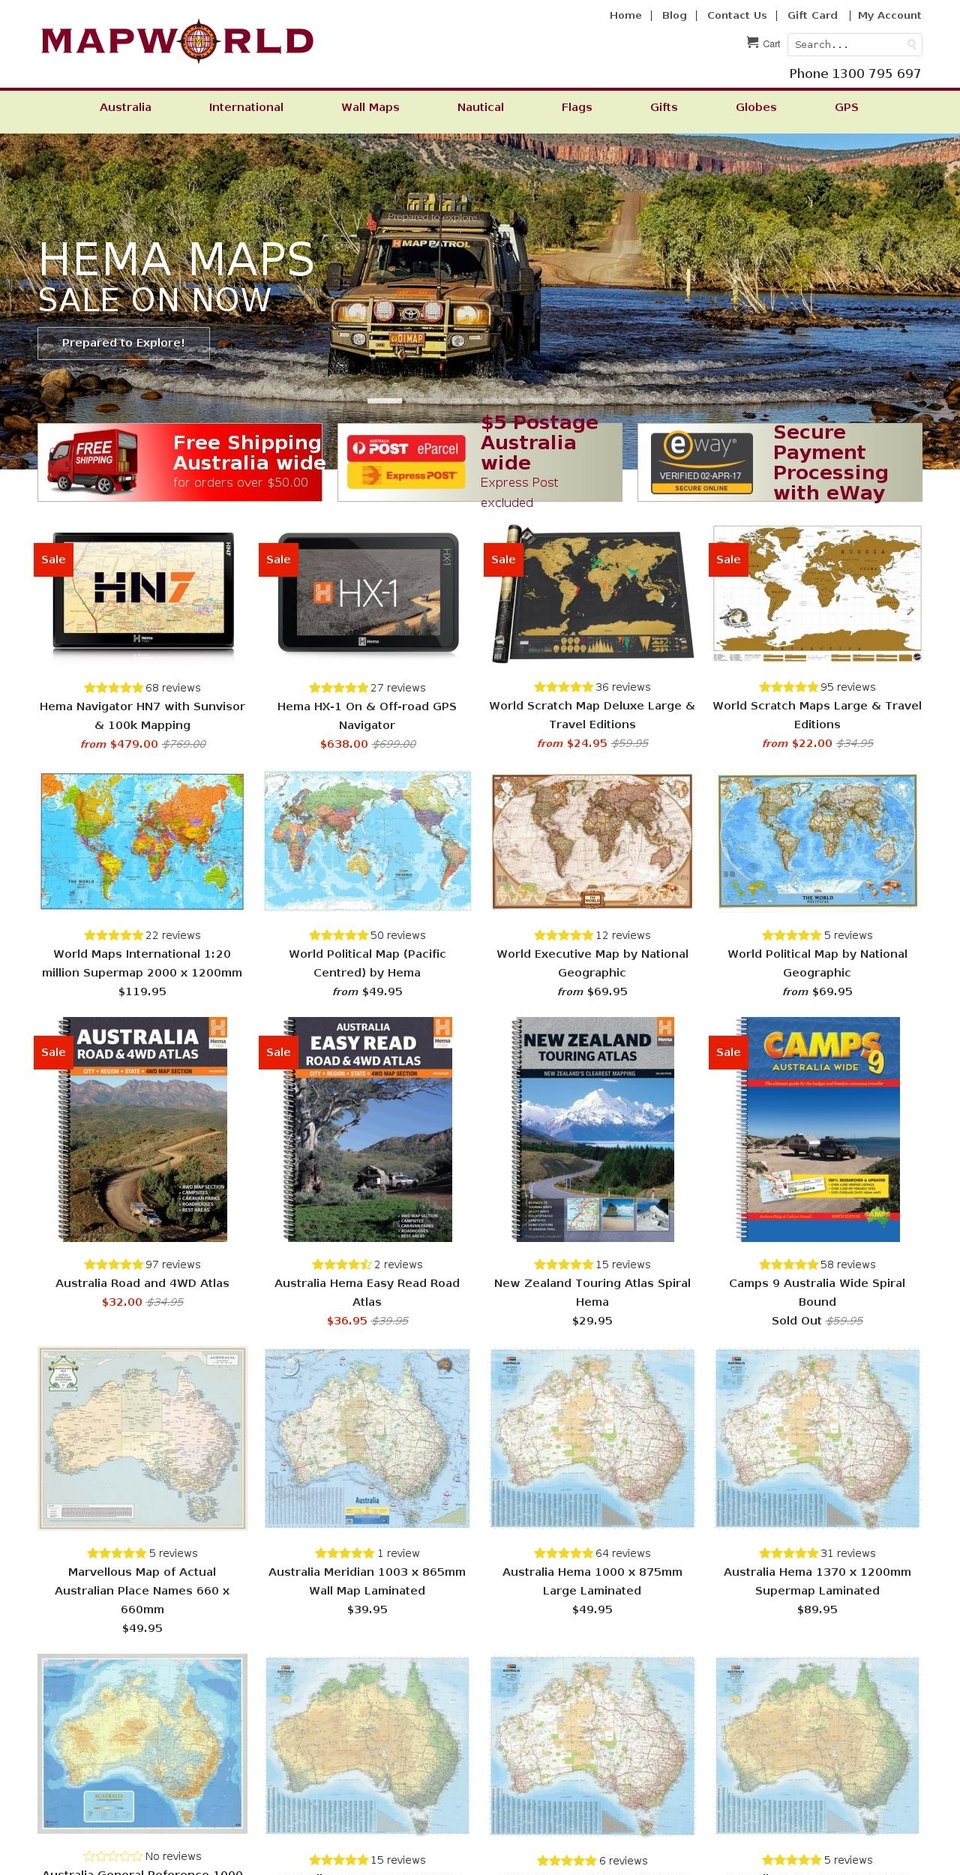 Origin Shopify theme site example mapworld.com.au